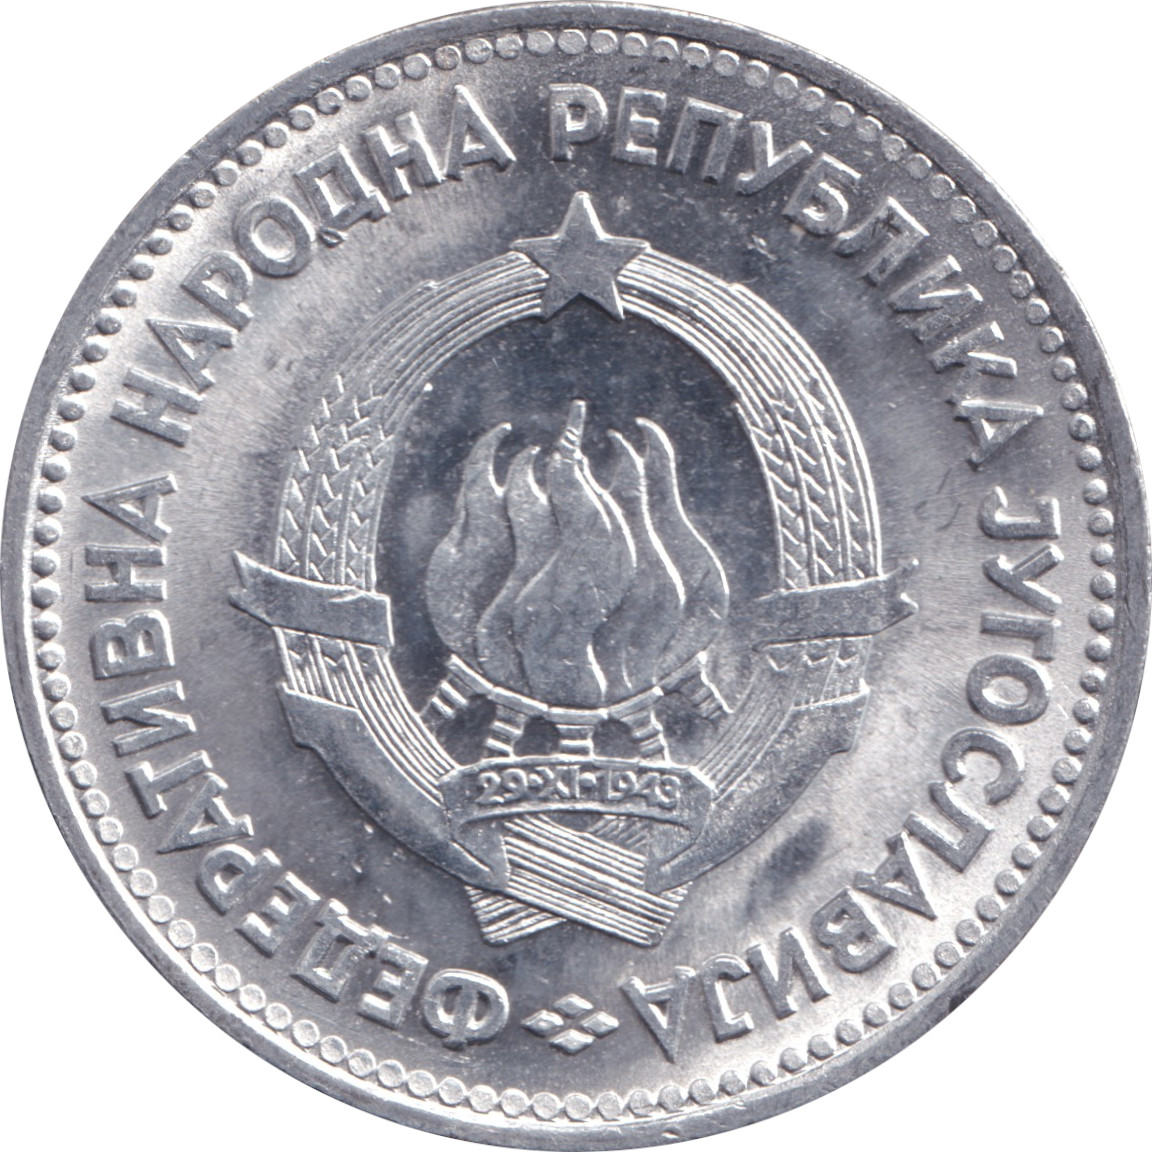 5 dinara - Emblem - Aluminium - People Republic